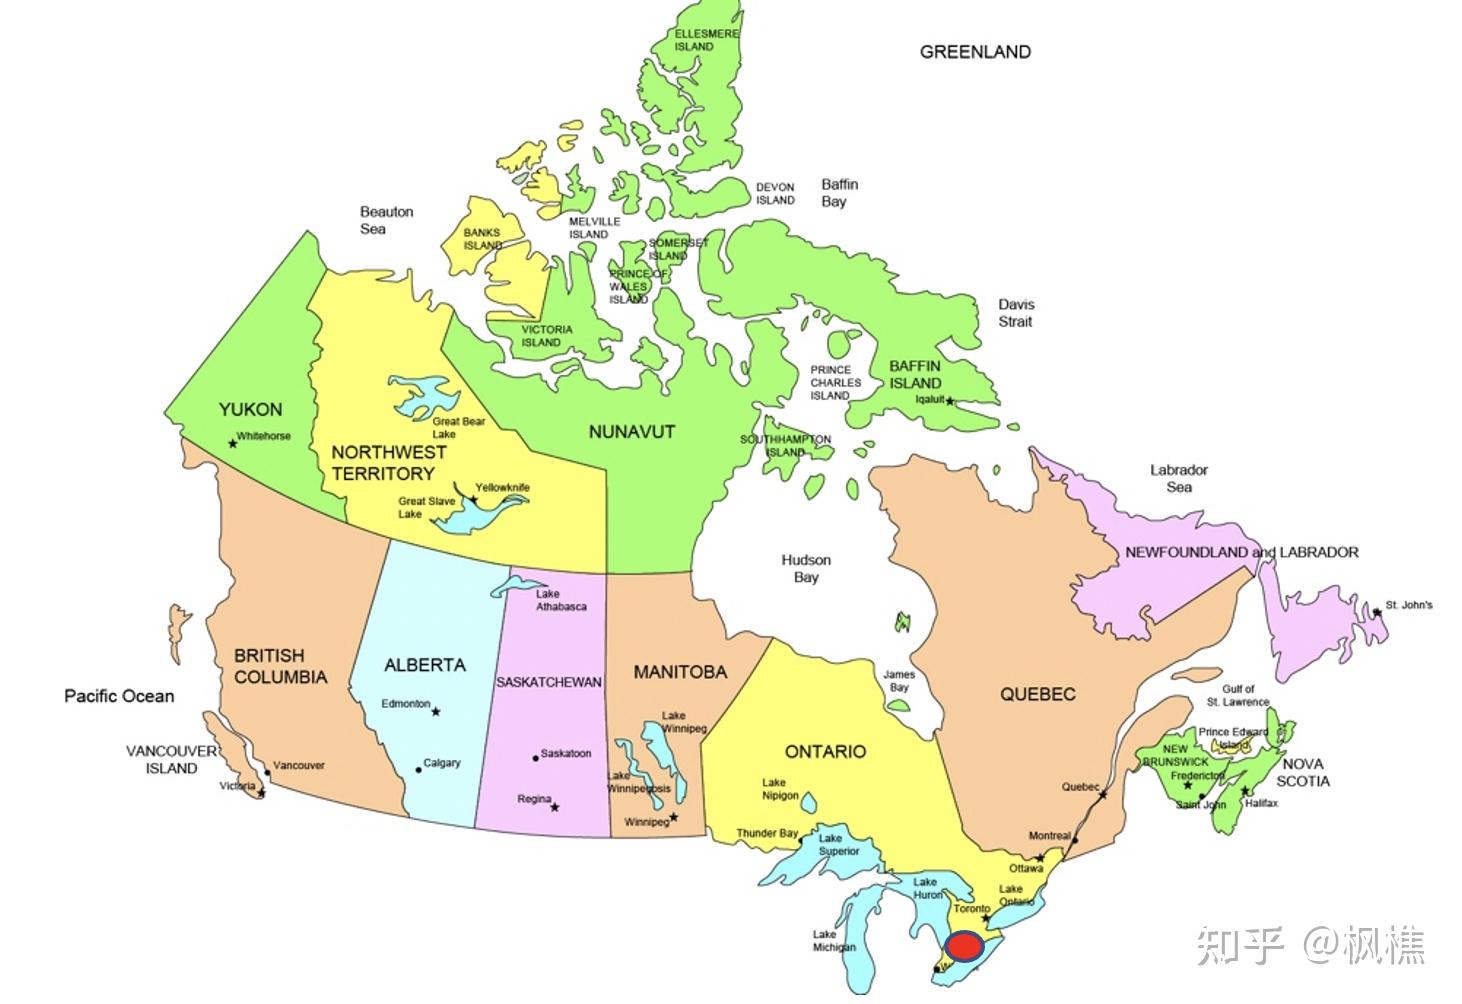 听说温哥华多伦多生活成本高加拿大有没有生活成本稍低教育水平也不错